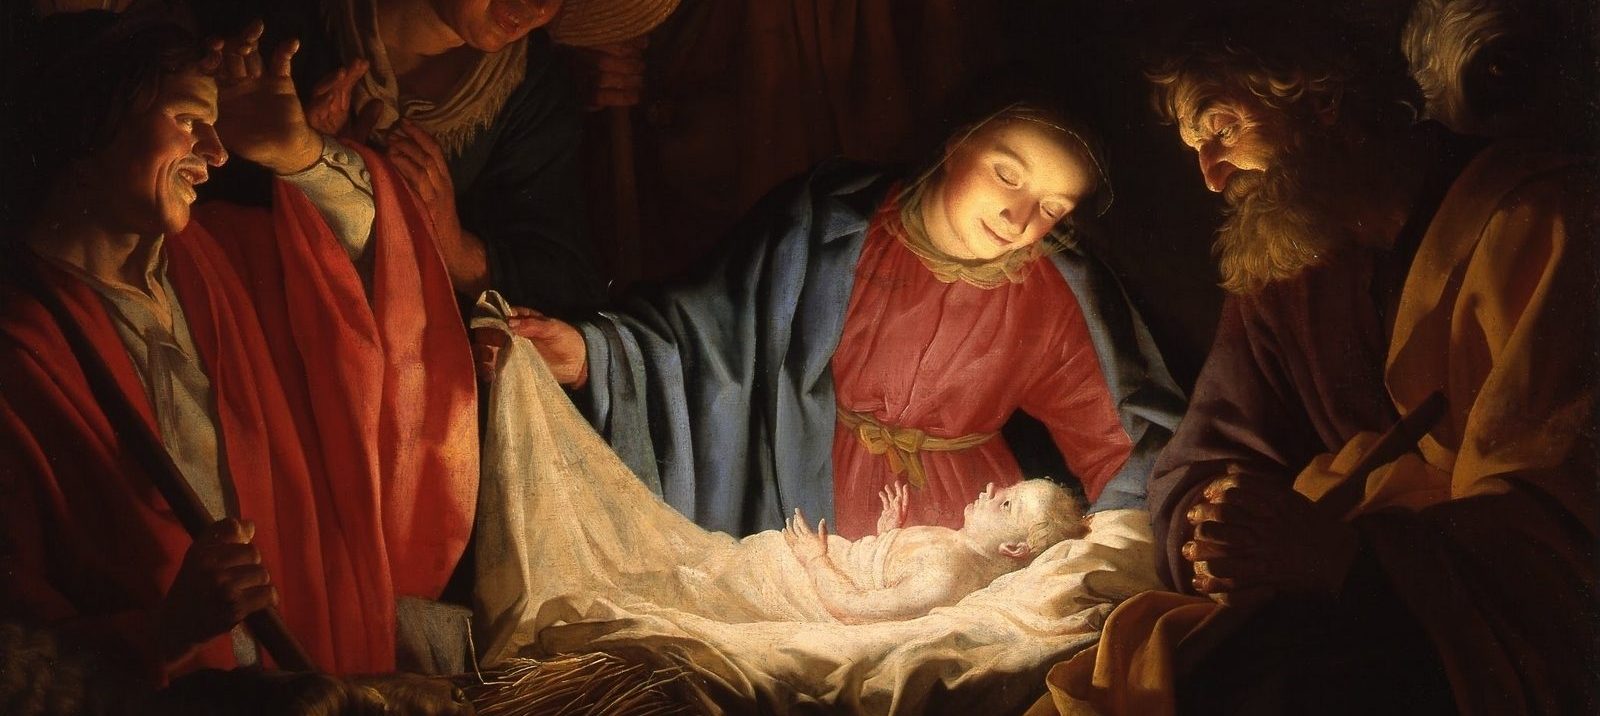 La Natividad en la pintura #ArteCristiano